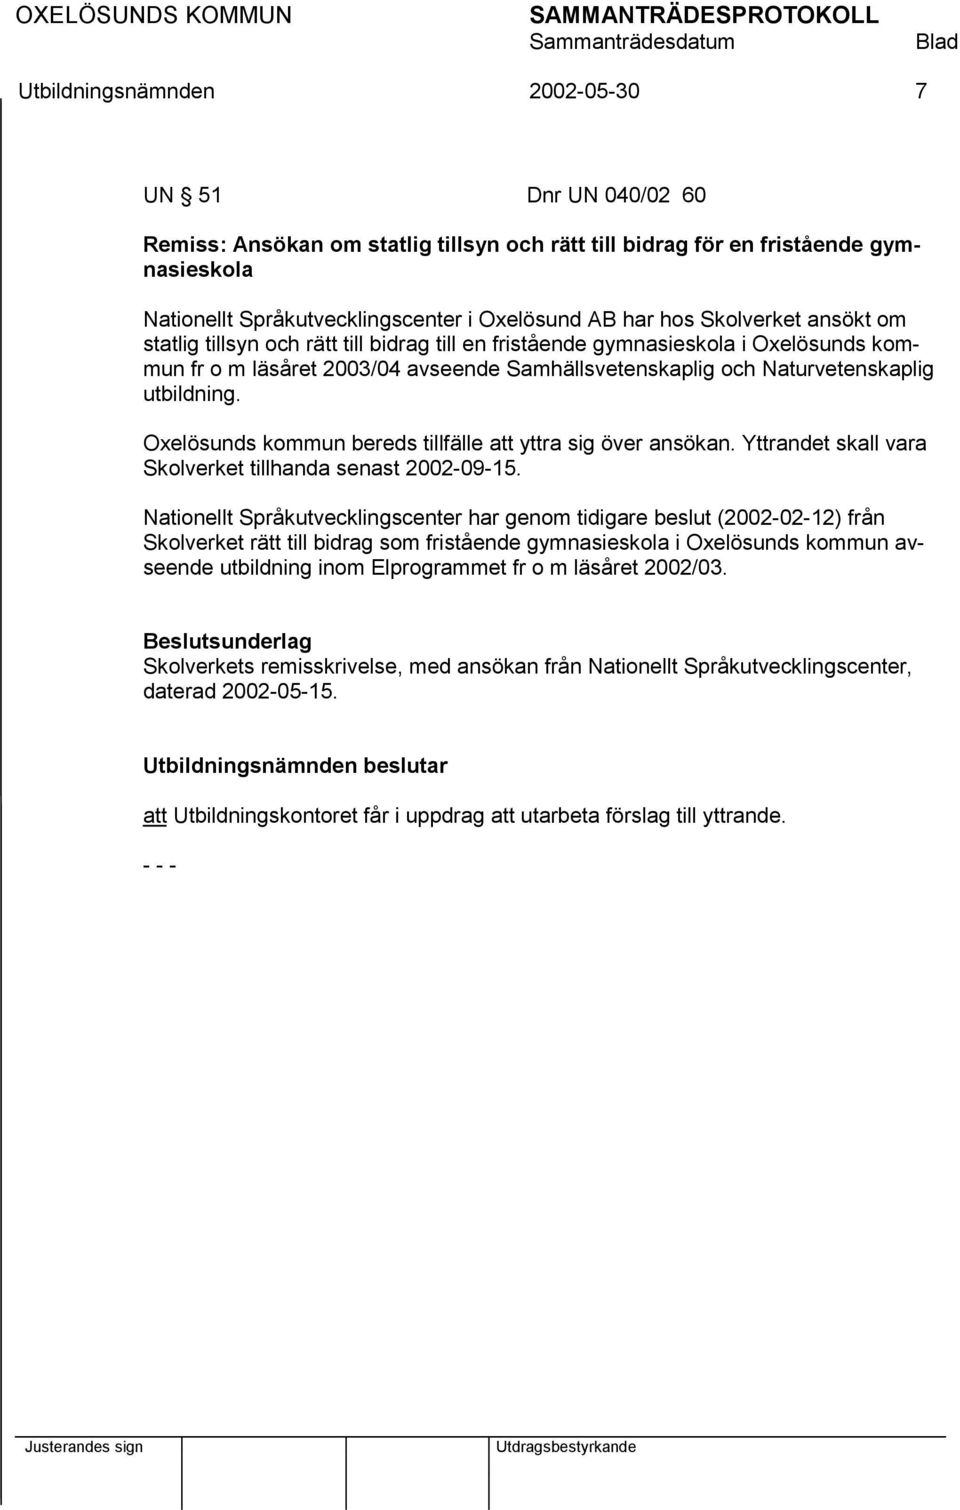 Oxelösunds kommun bereds tillfälle att yttra sig över ansökan. Yttrandet skall vara Skolverket tillhanda senast 2002-09-15.